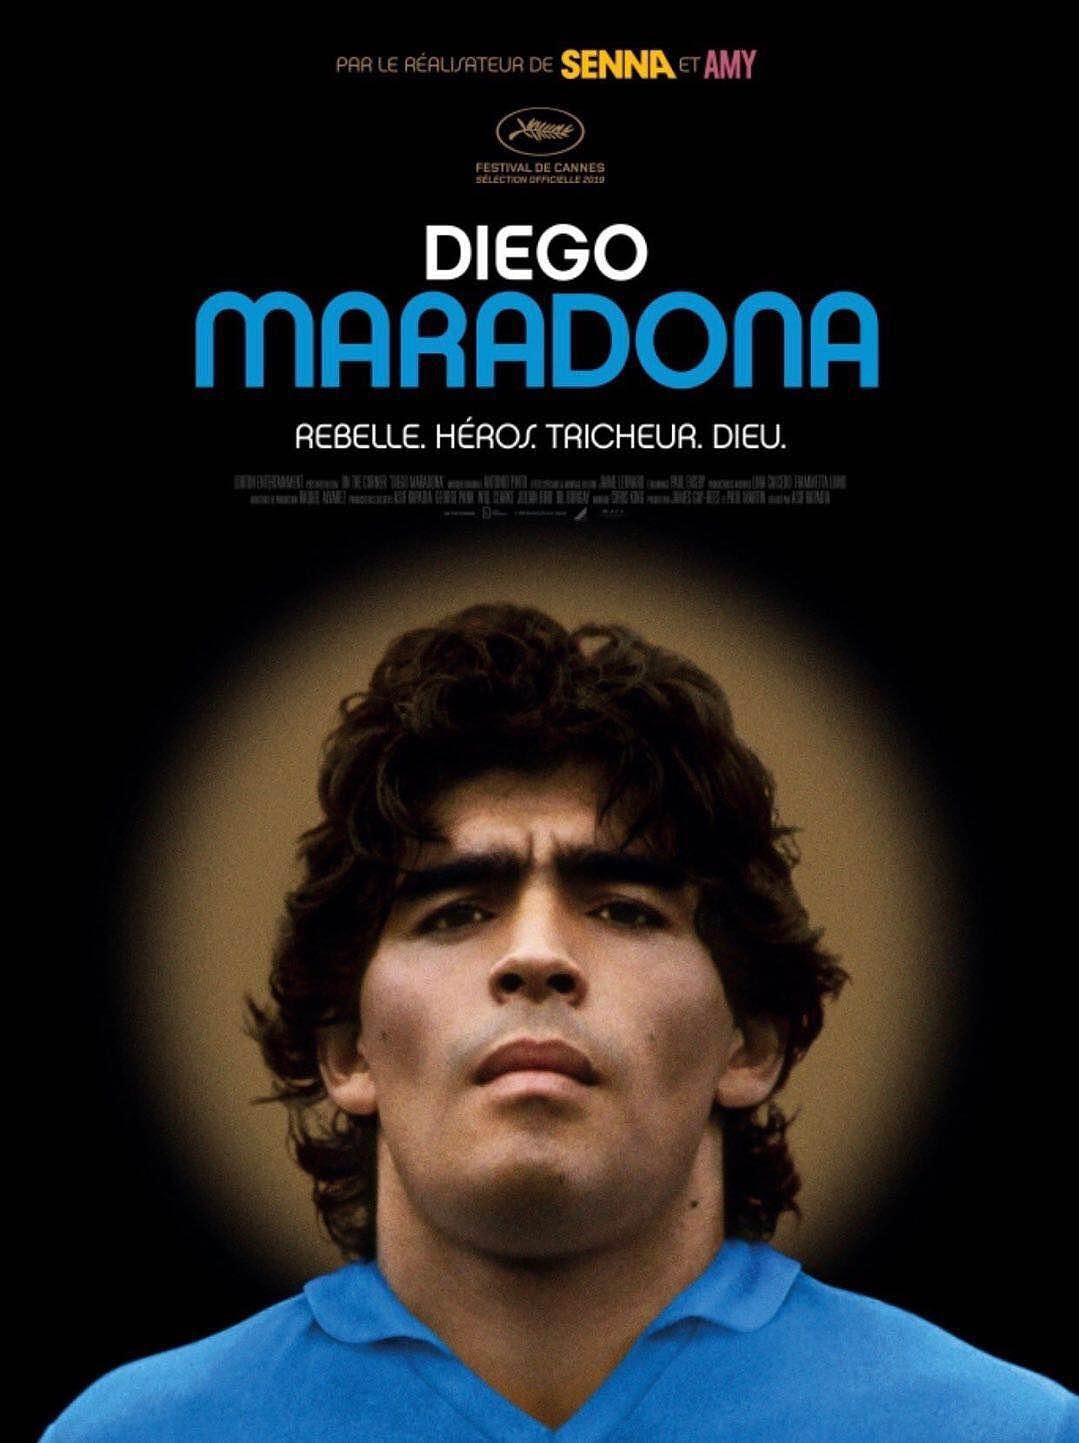 马拉多纳 Diego.Maradona.2019.SUBBED.720p.BluRay.x264-CADAVER 5.46GB-1.png